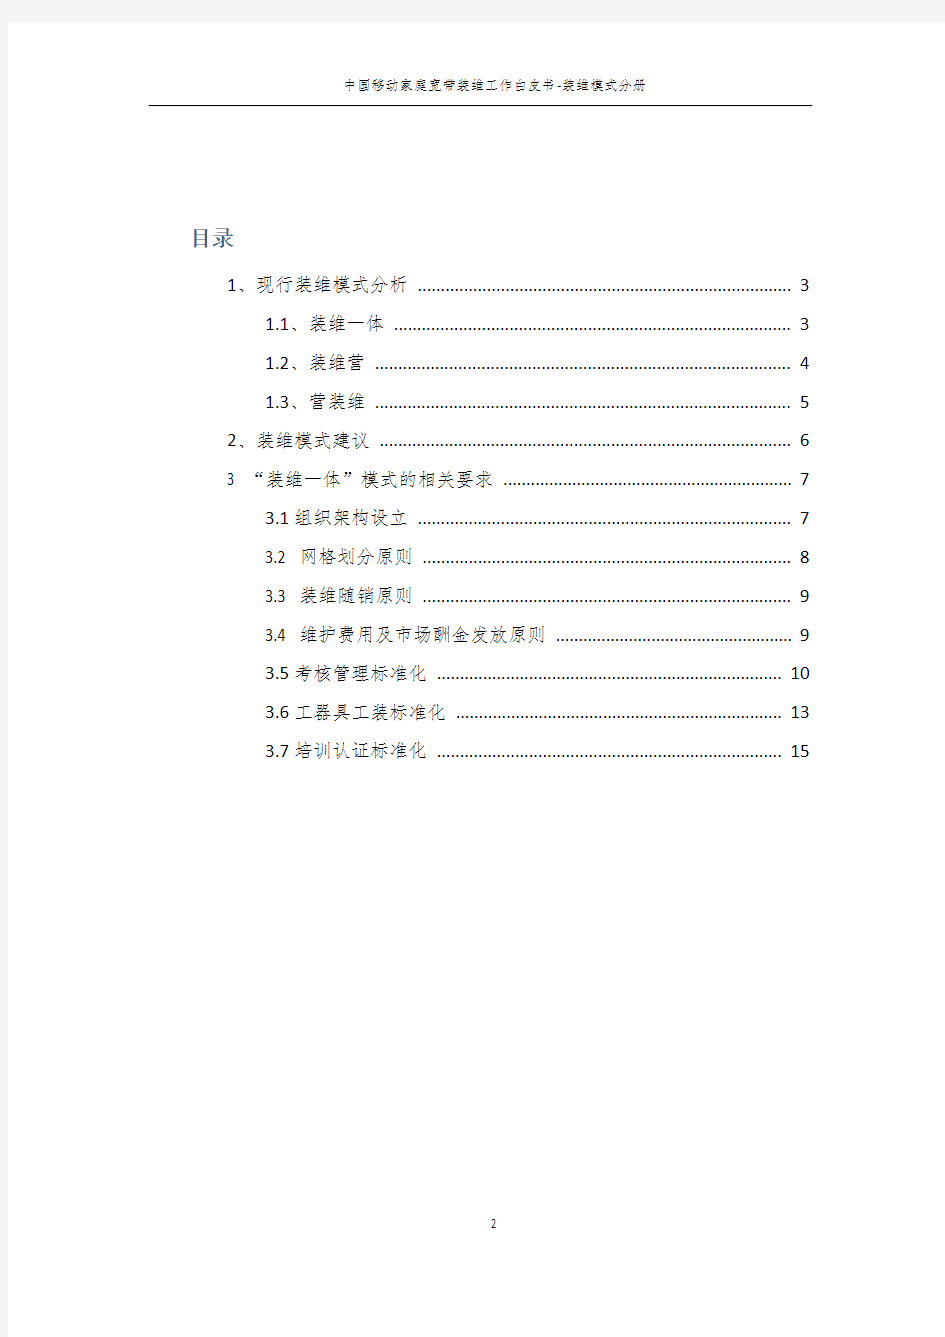 中国移动家庭宽带装维工作白皮书-装维模式分册